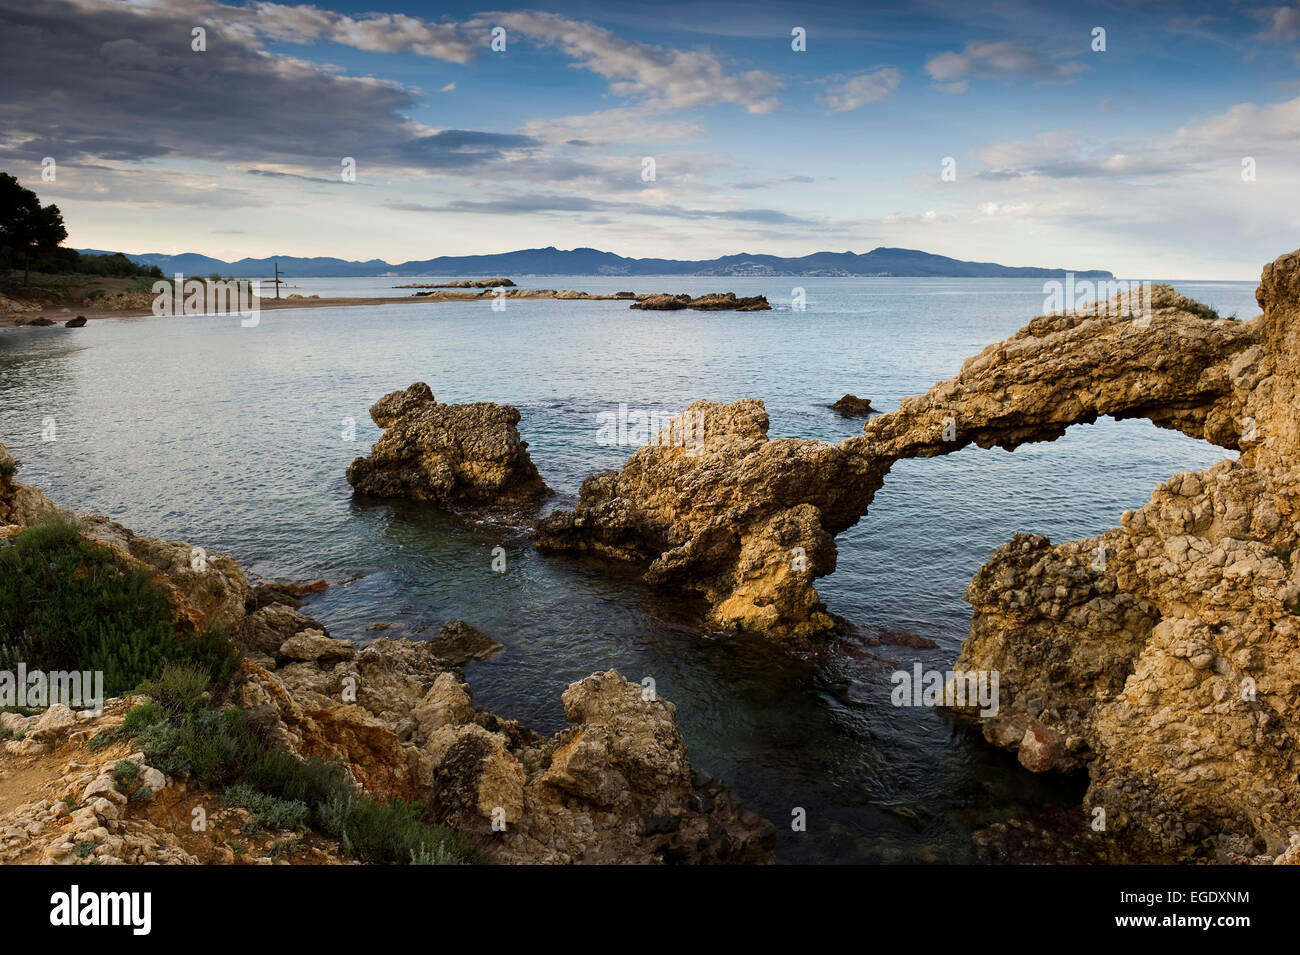 Spiaggia e costa rocciosa nei pressi di L'Escala, in Costa Brava Costa Brava, Spagna Foto Stock